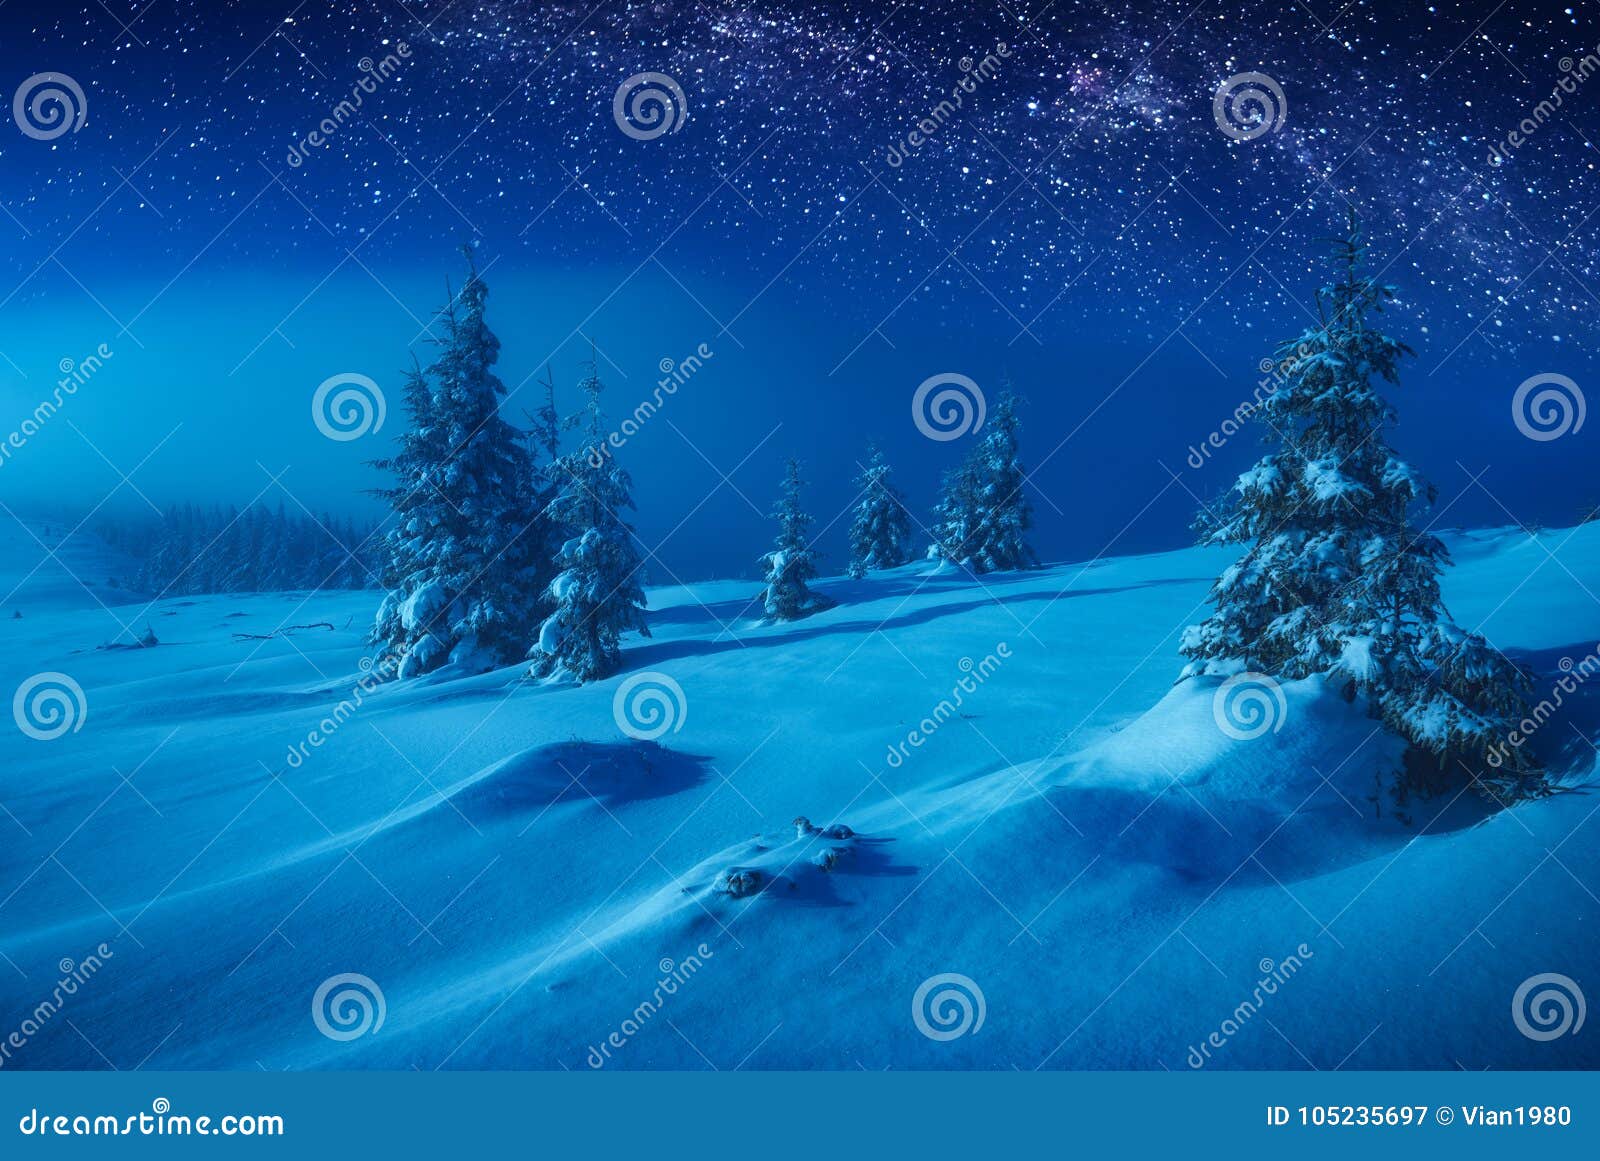 De vallei van de feewinter met sneeuw in een maanlicht dat wordt behandeld Melkachtige manier in een nacht sterrige hemel Kerstmis en Nieuwjaren stemmings